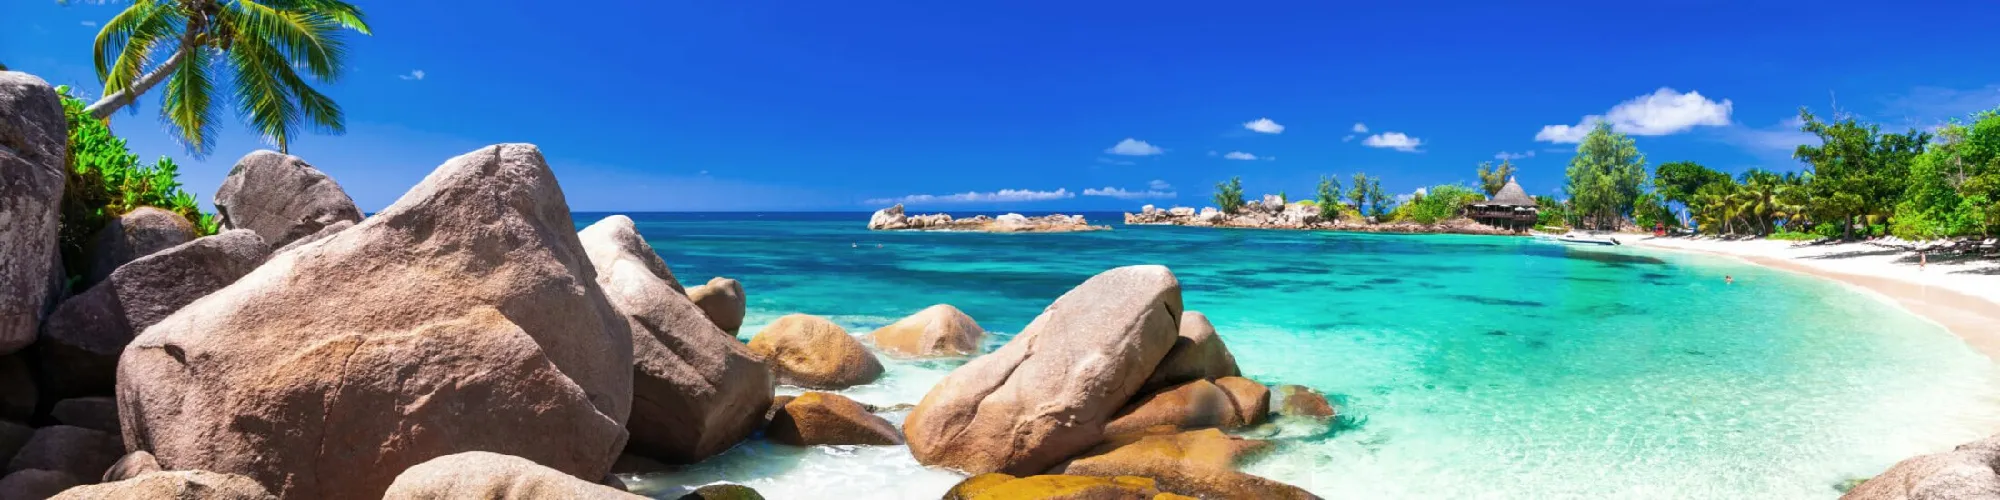 Traumreisen auf die Seychellen background image